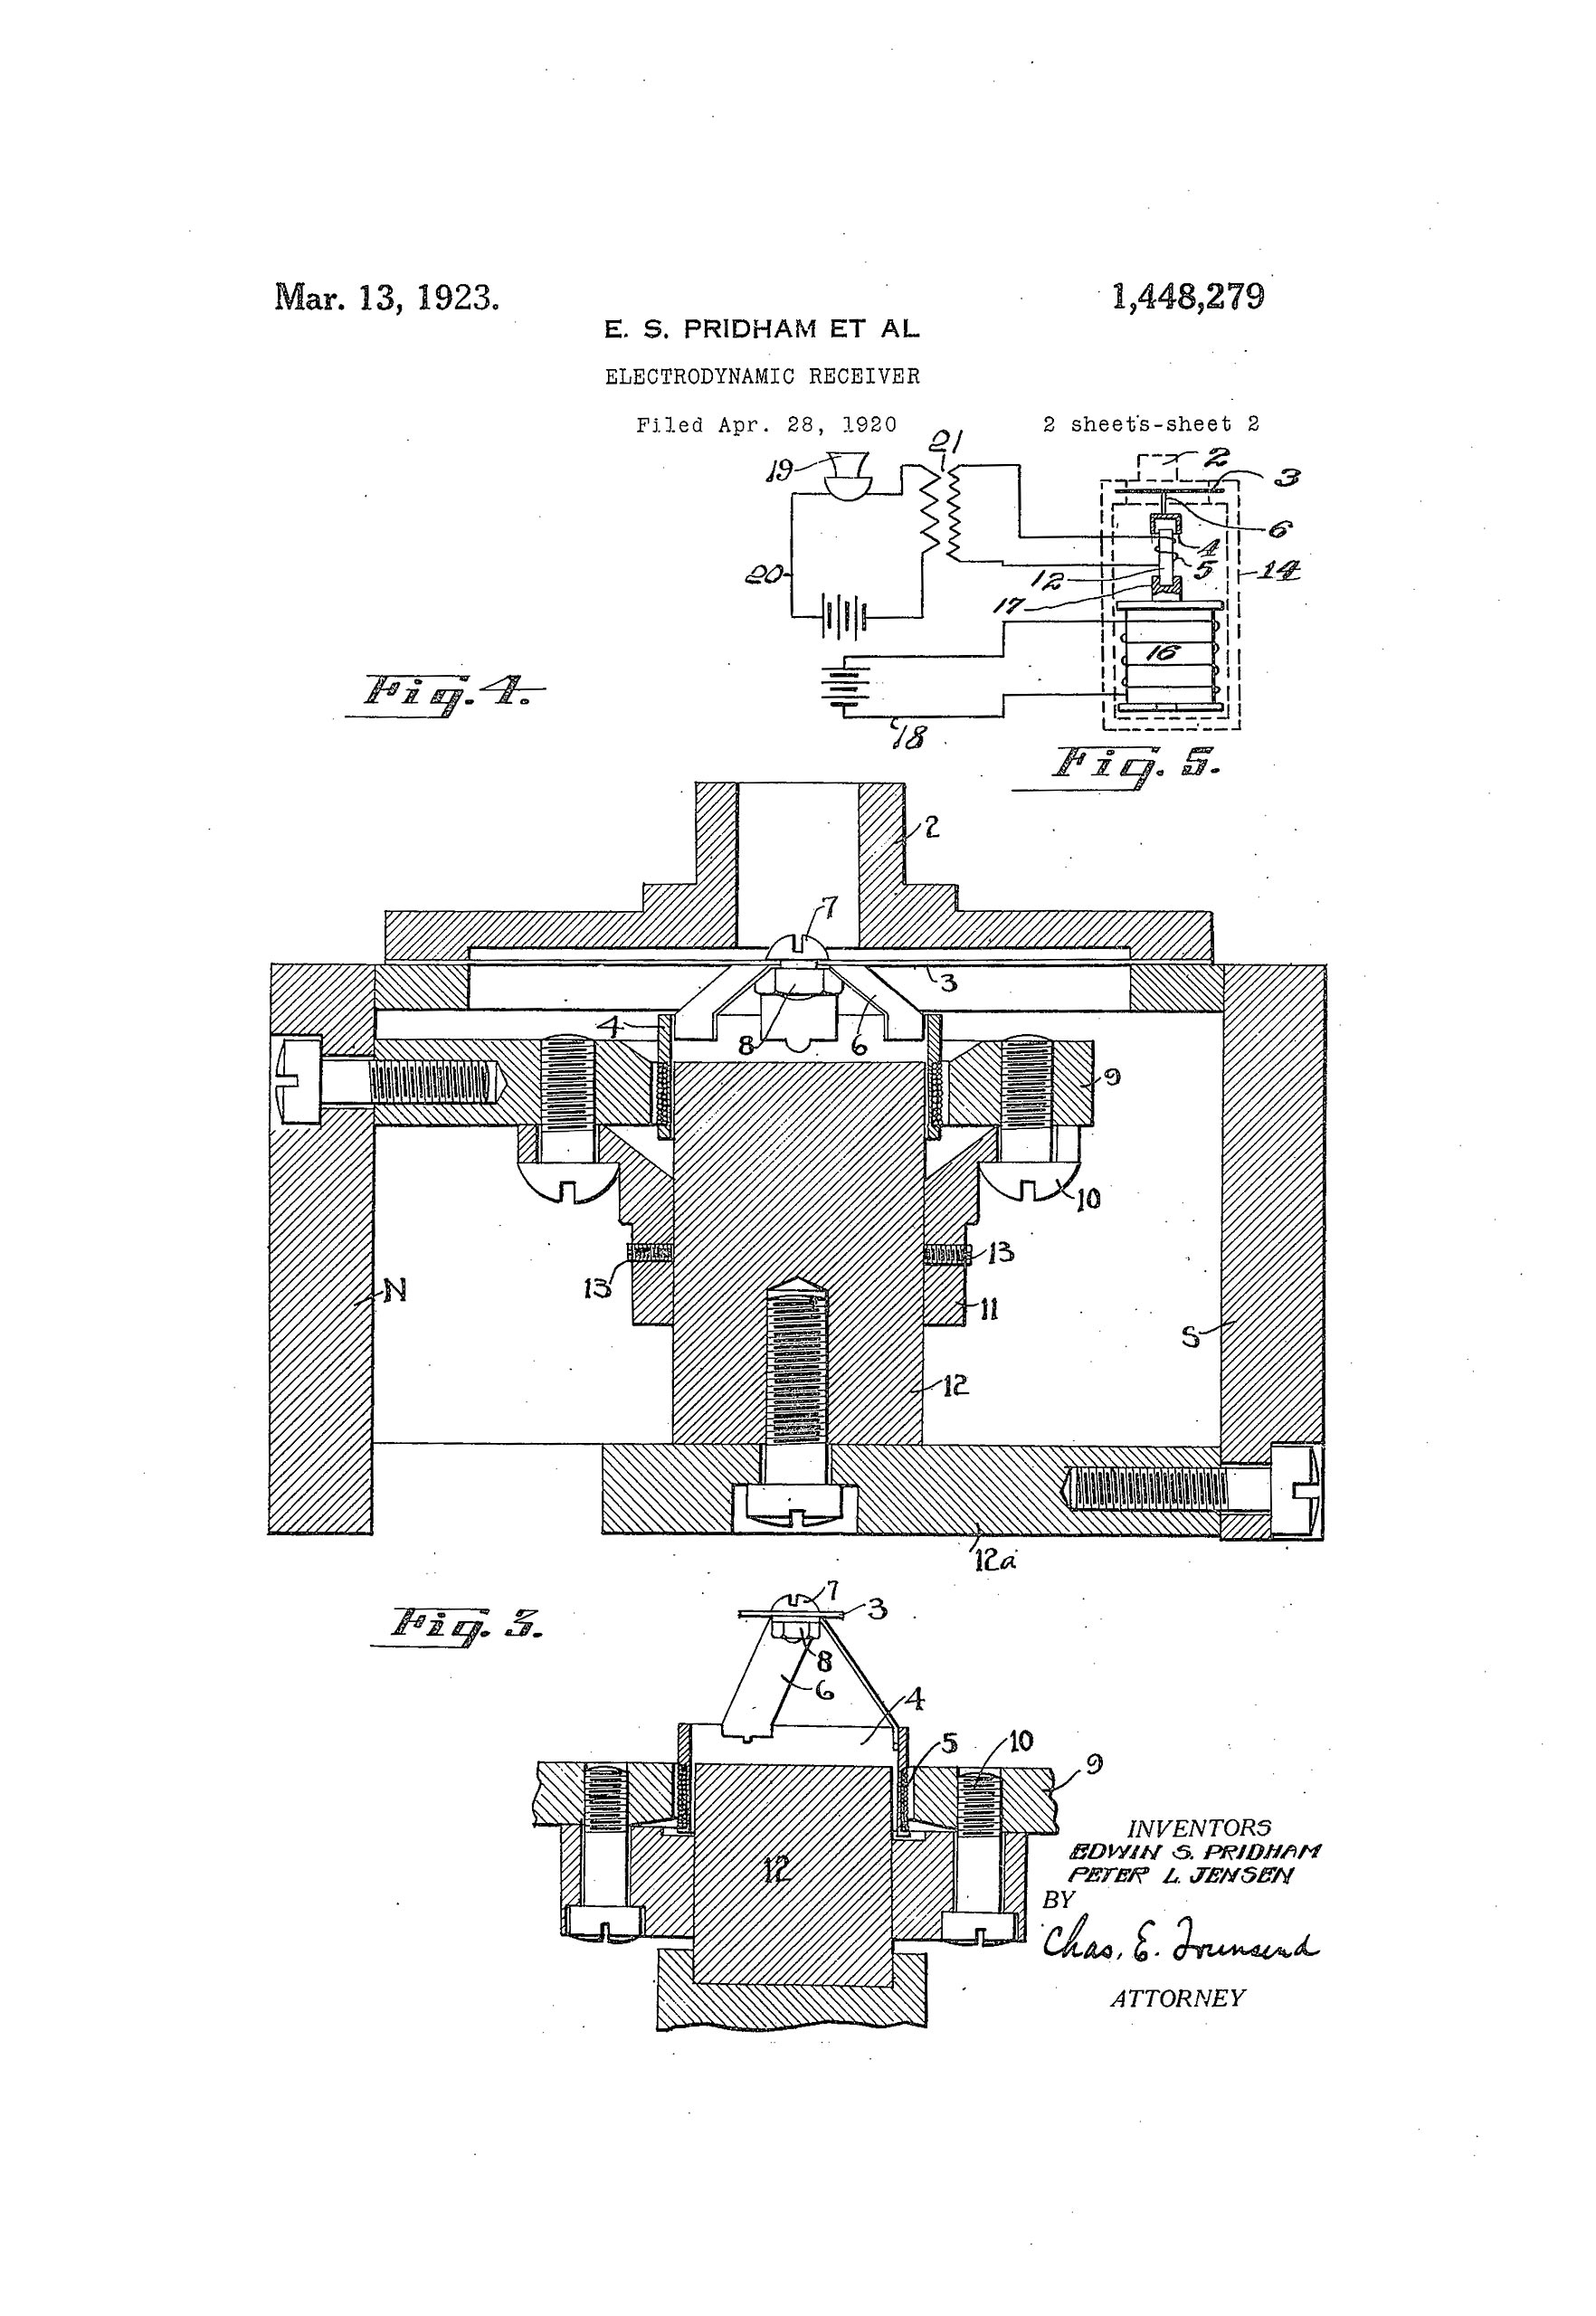 Brevet de Pridham et Jensen sur le principe de transducteur sonore electromagnétique - 1928 (les spécialistes reconnaîtront le principe du moteur de chambre de compression encore utilisé aujourd'hui)